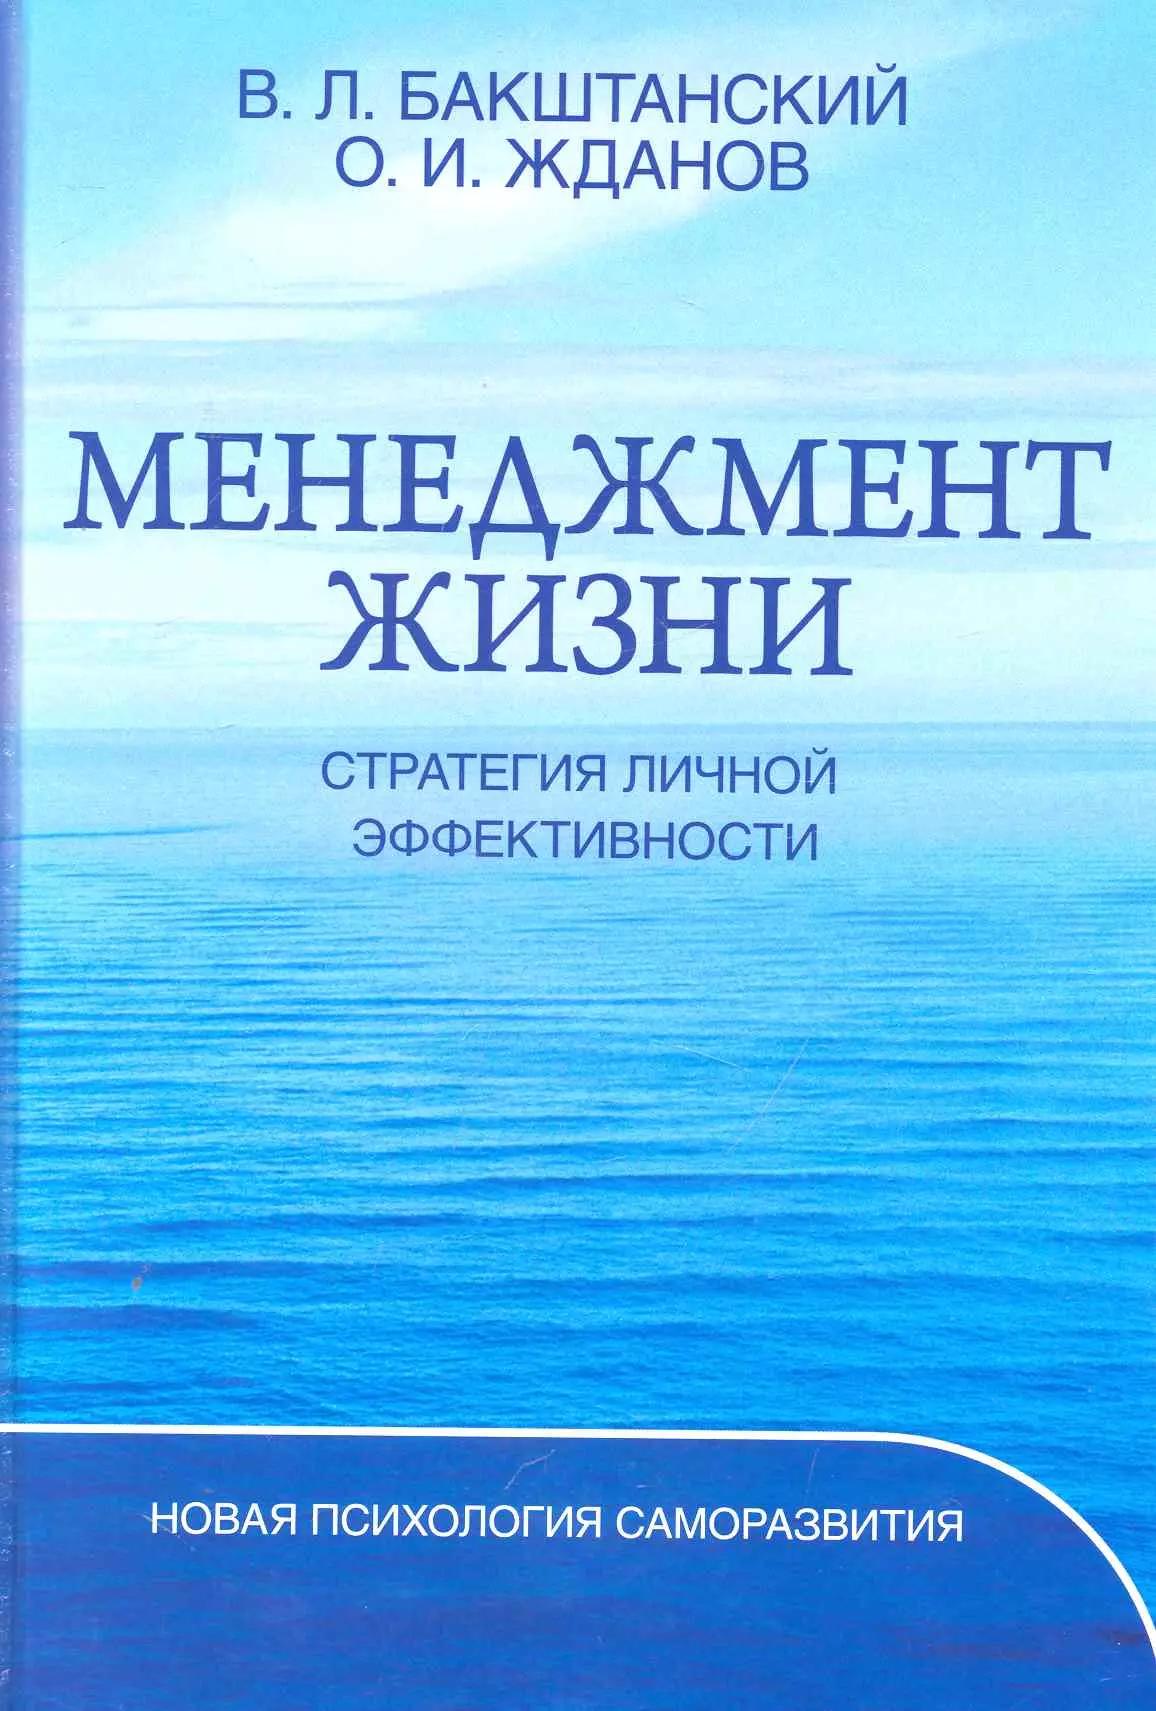 Бакштанский В. Л. - Менеджмент жизни: Стратегия личной эффективности / Изд. 5-е